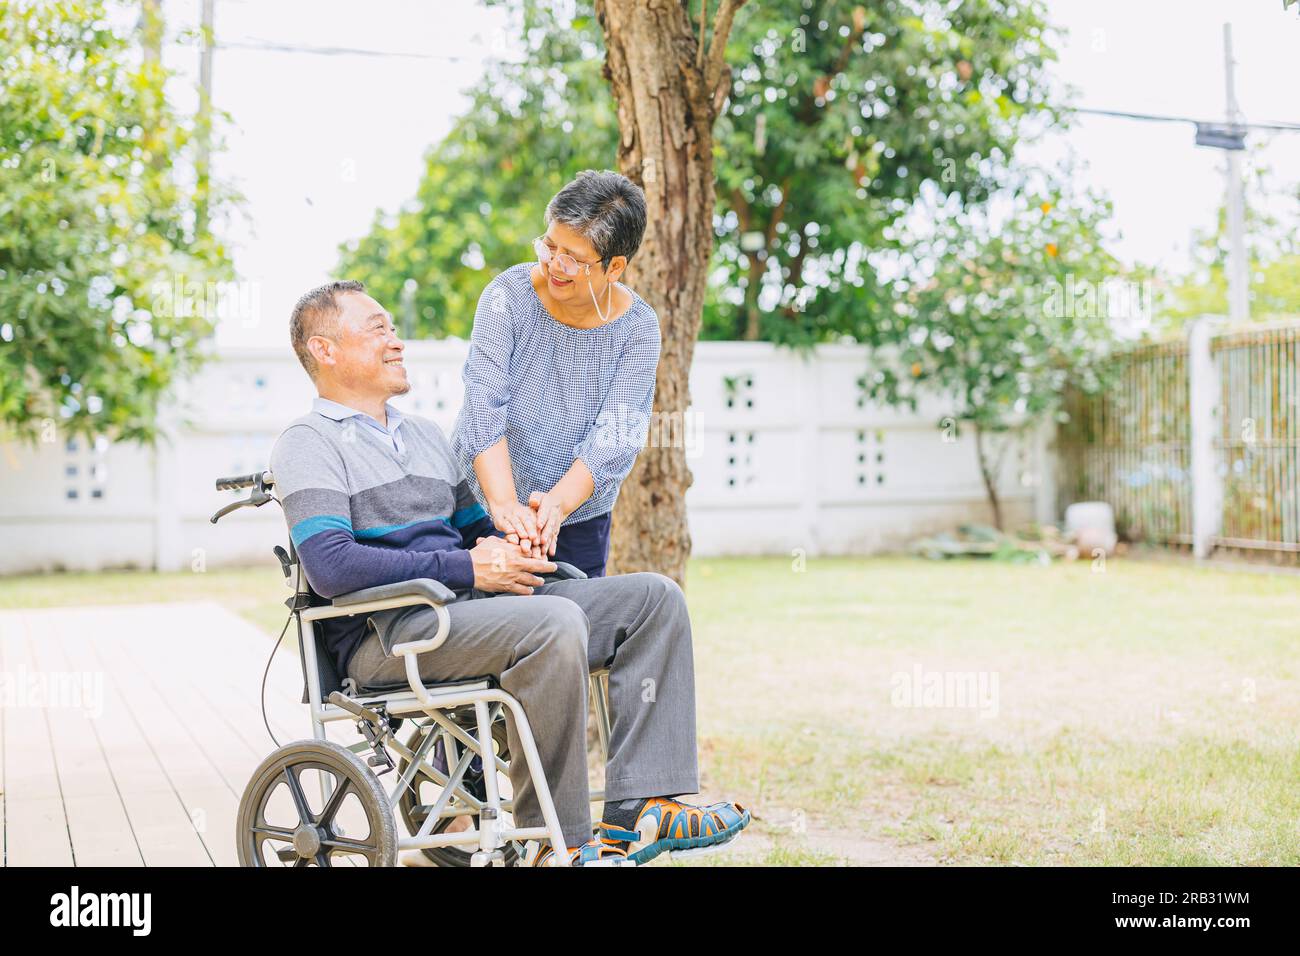 les personnes âgées couple de soins familiaux aiment ensemble homme assis sur un fauteuil roulant, femme retraitée âgée heureuse avec mari handicapé Banque D'Images